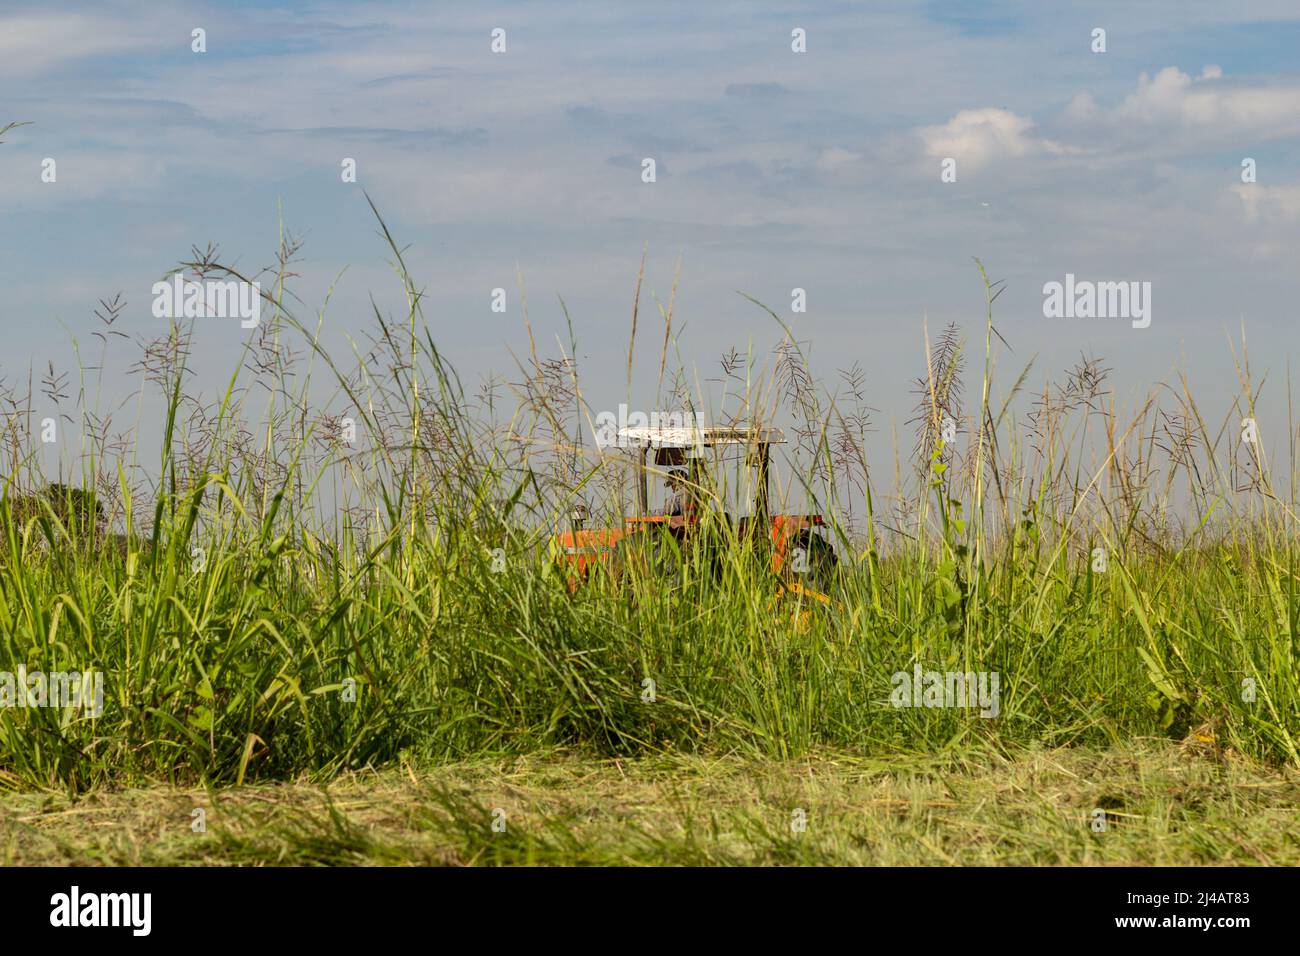 Goiânia, Goias, Brasilien – 12. April 2022: Ein Traktor, der mitten in viel Gras arbeitet, mit dem Himmel im Hintergrund. Stockfoto